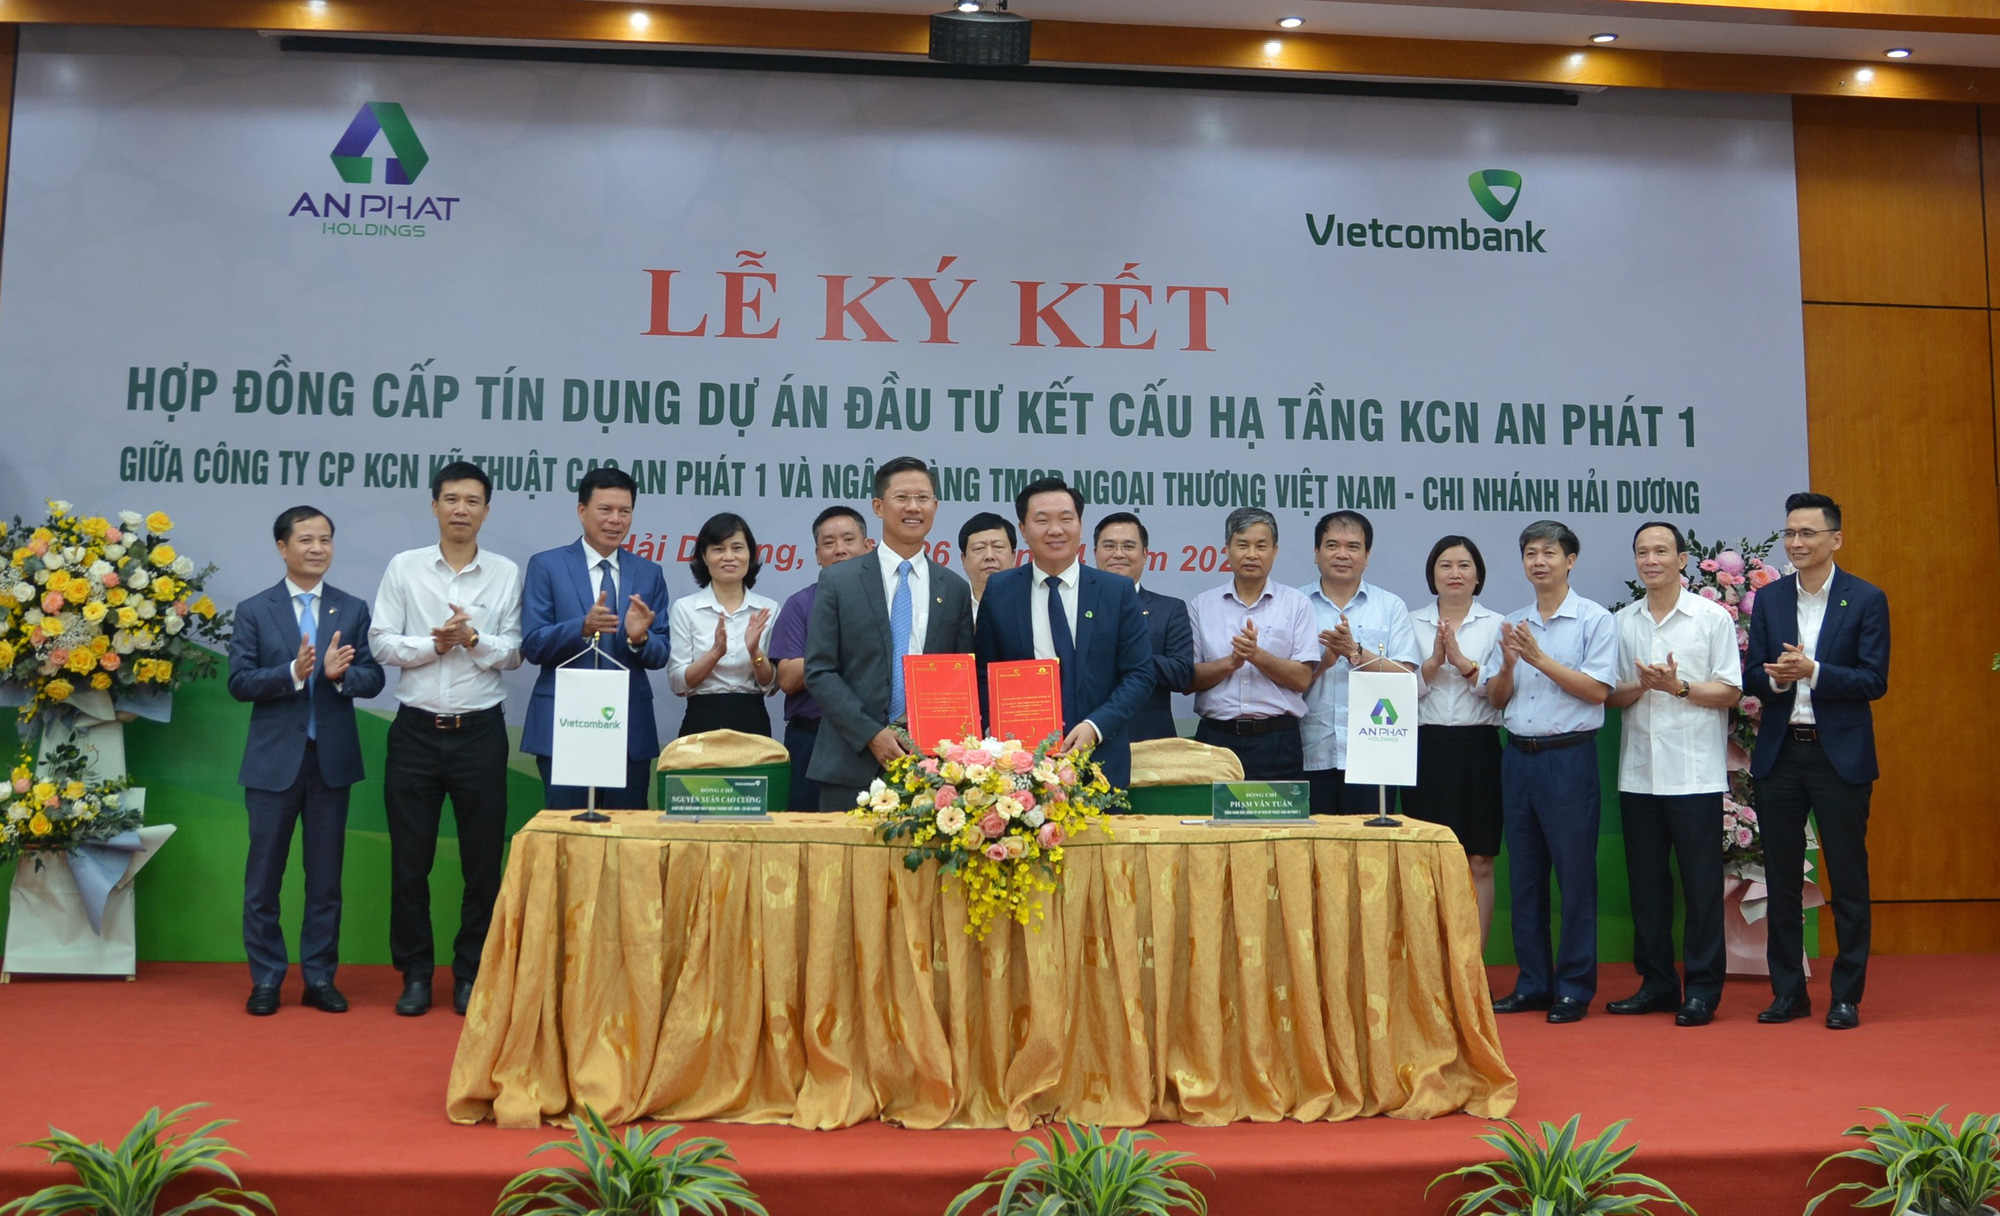 Vietcombank Hải Dương ký kết hợp đồng cấp tín dụng 1.200 tỷ đồng với Công ty CP KCN kỹ thuật cao An Phát 1 - Ảnh 3.